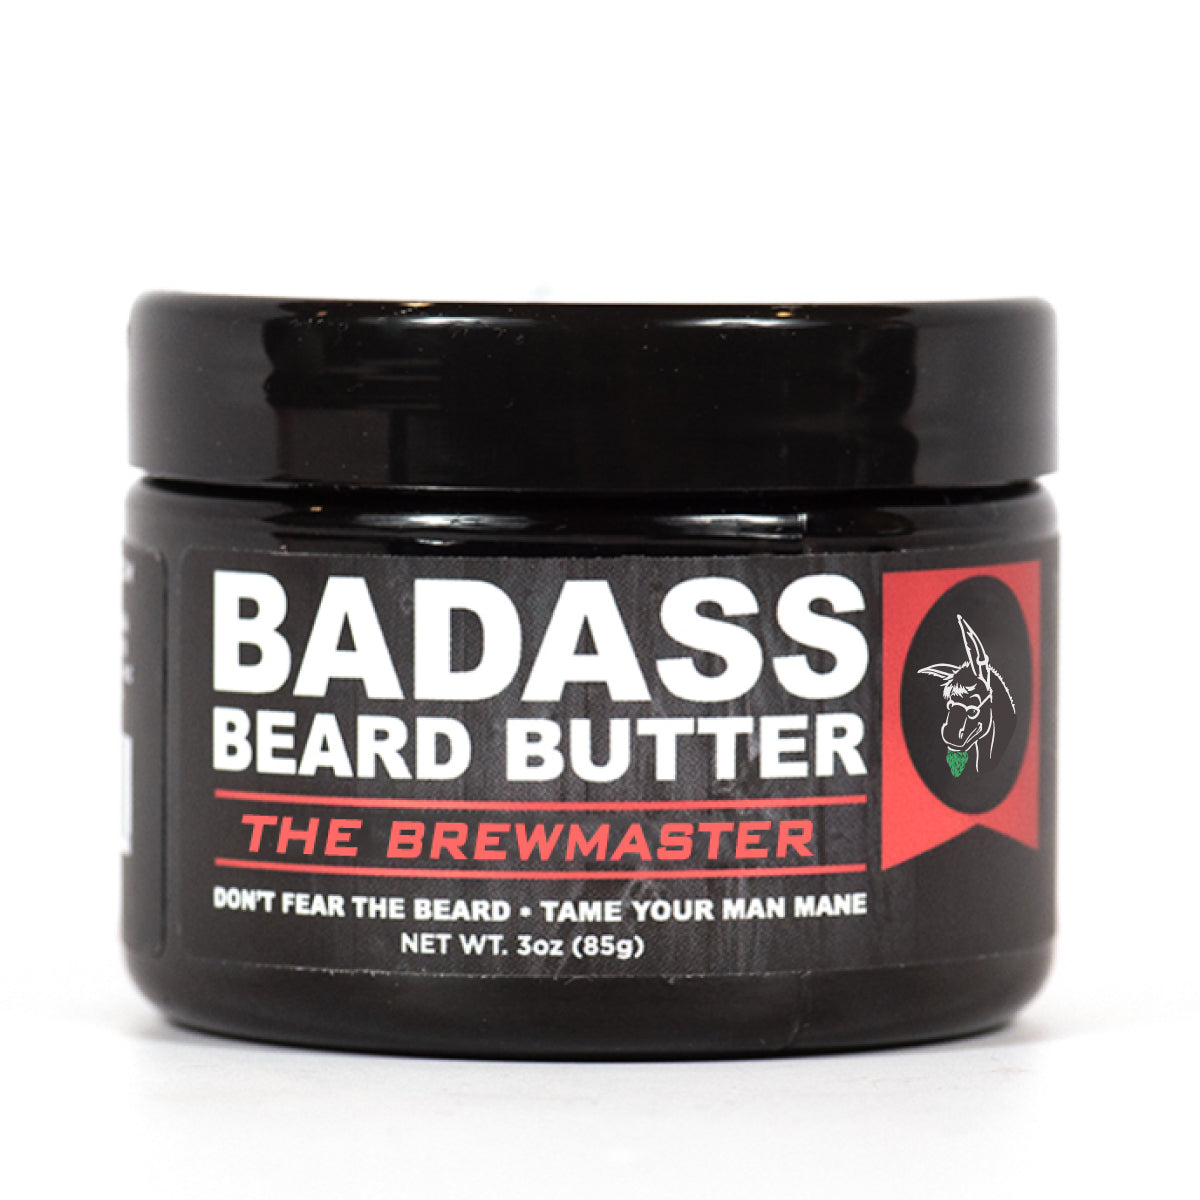 The Brewmaster Beard Butter